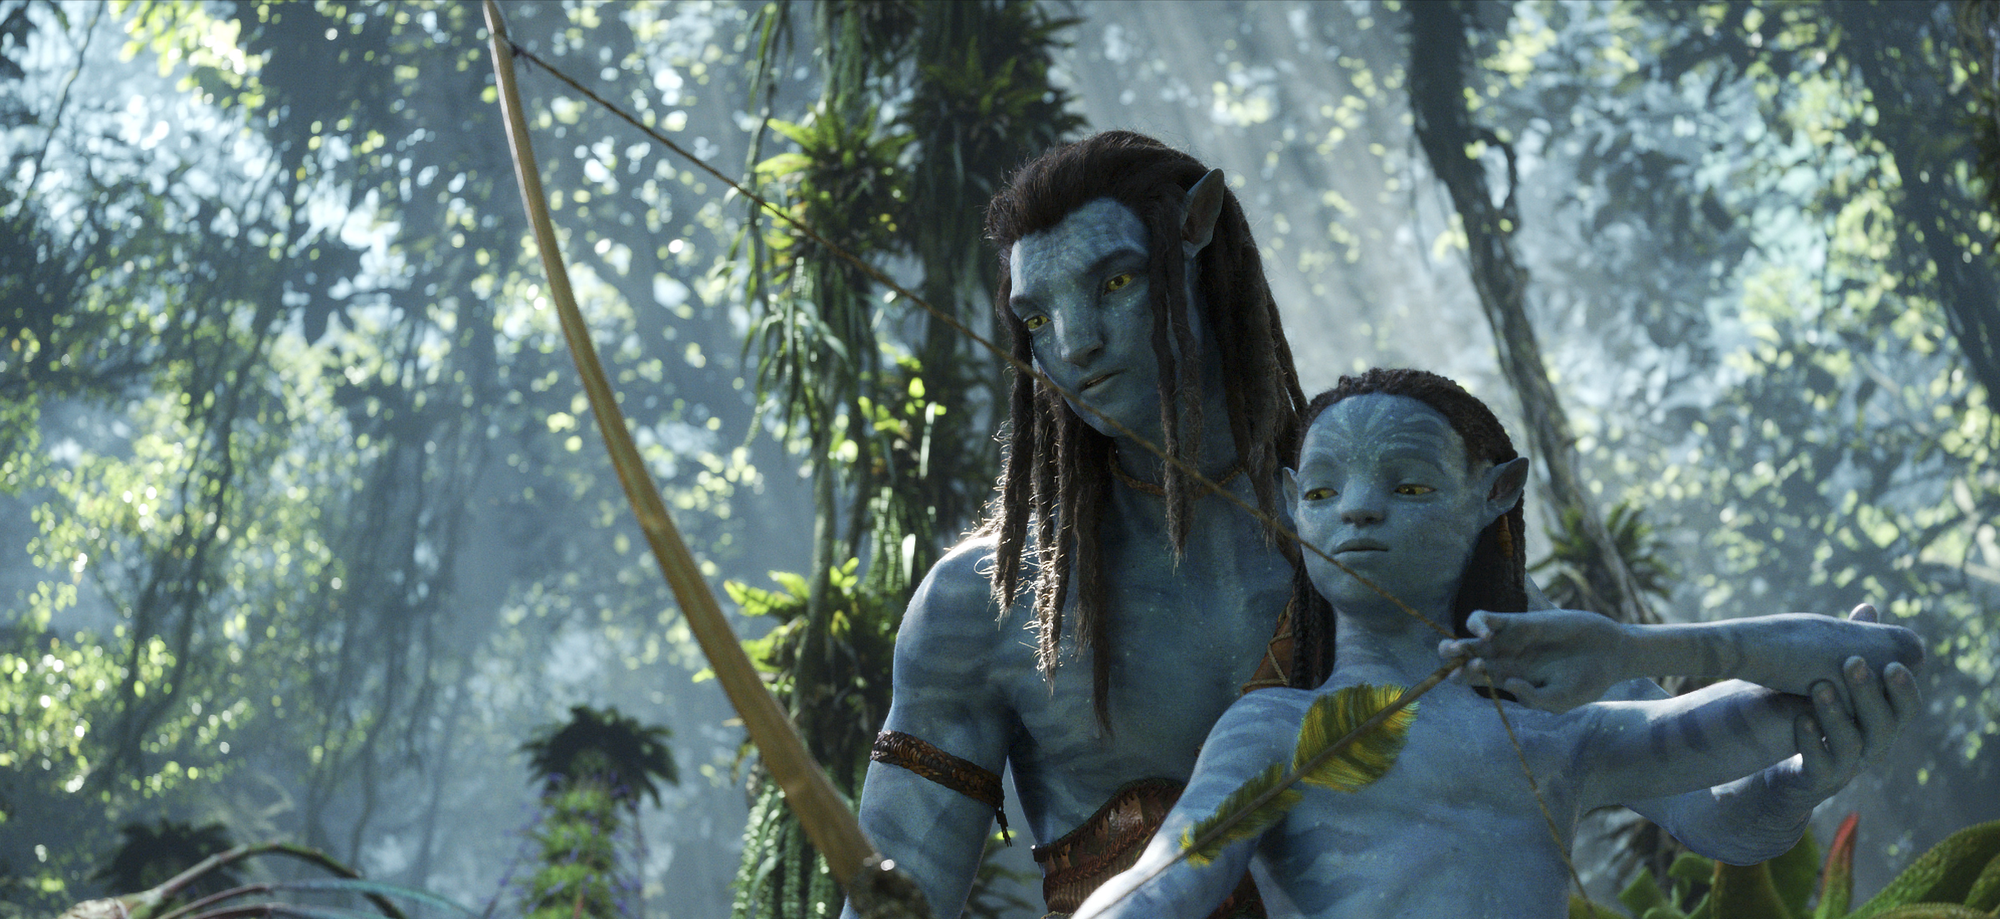 Sự thật về kỳ quan điện ảnh Avatar 2: Đạo diễn lặn 10km xuống lòng đại dương để tìm cảm hứng - Ảnh 4.